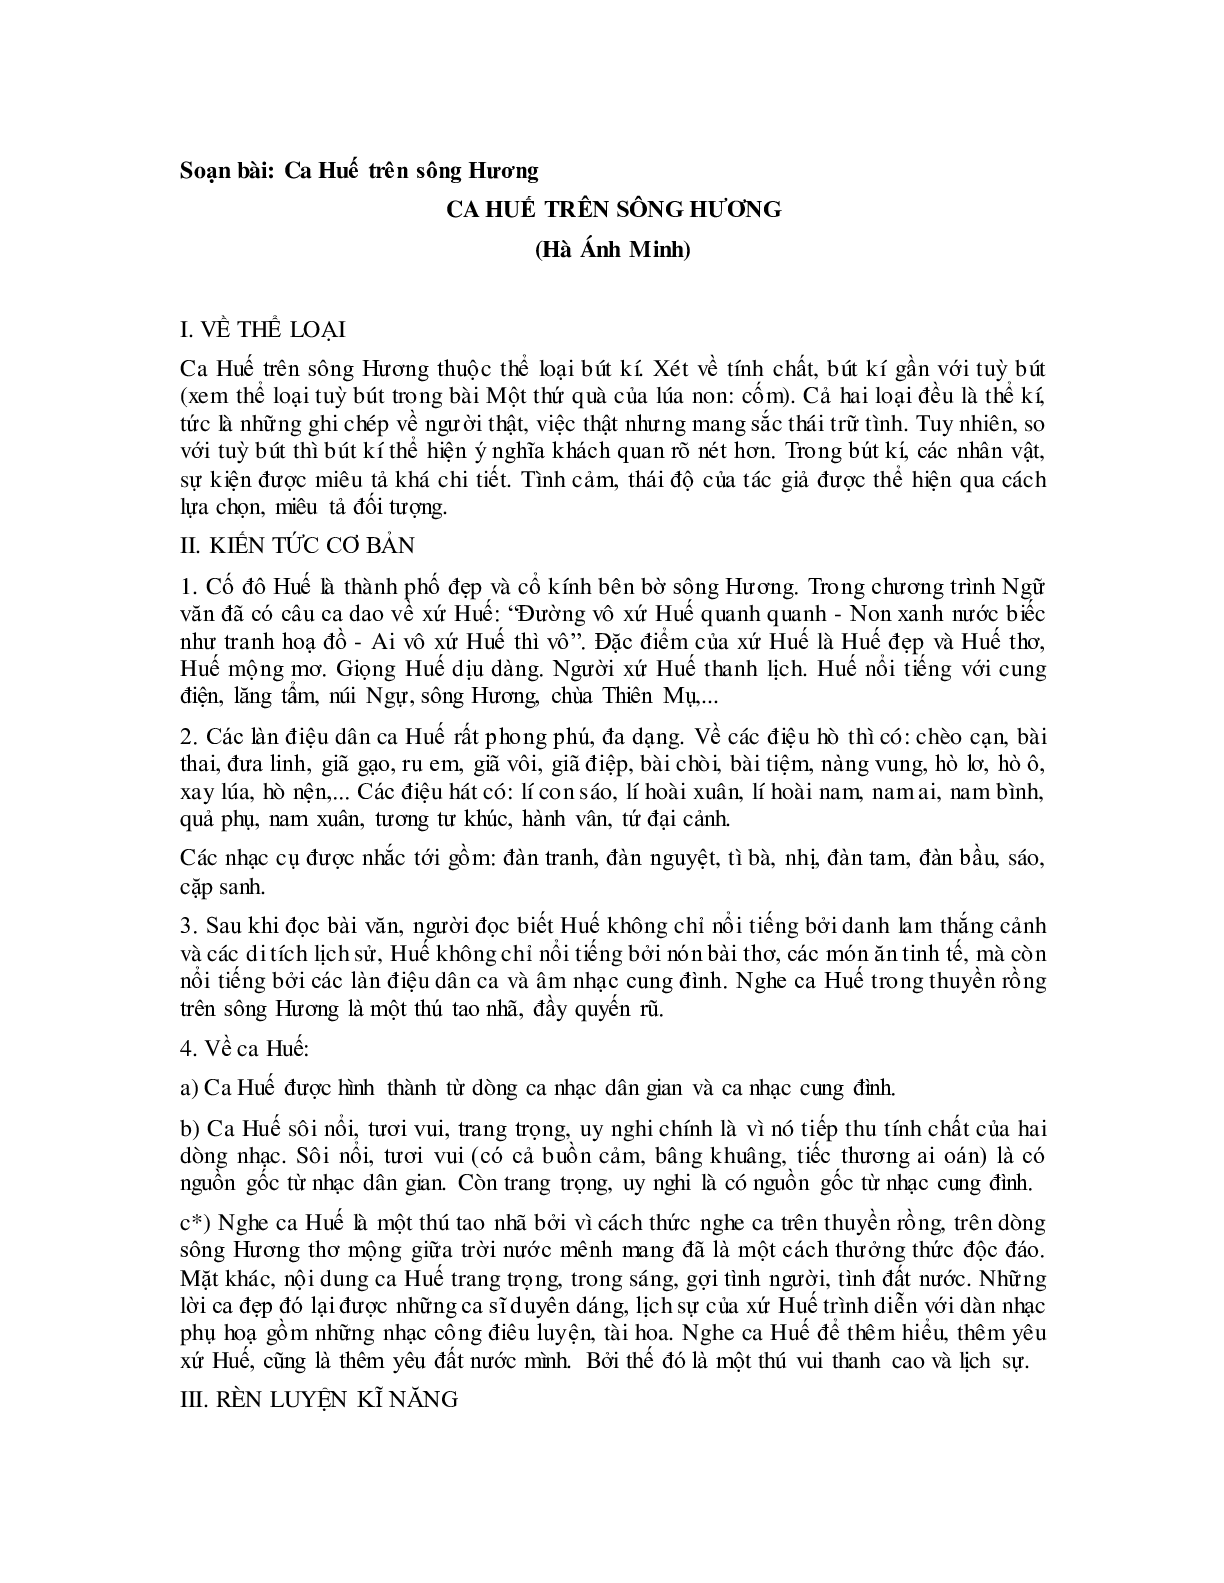 Soạn văn 7 Ca Huế trên sông Hương - ngắn nhất (trang 1)